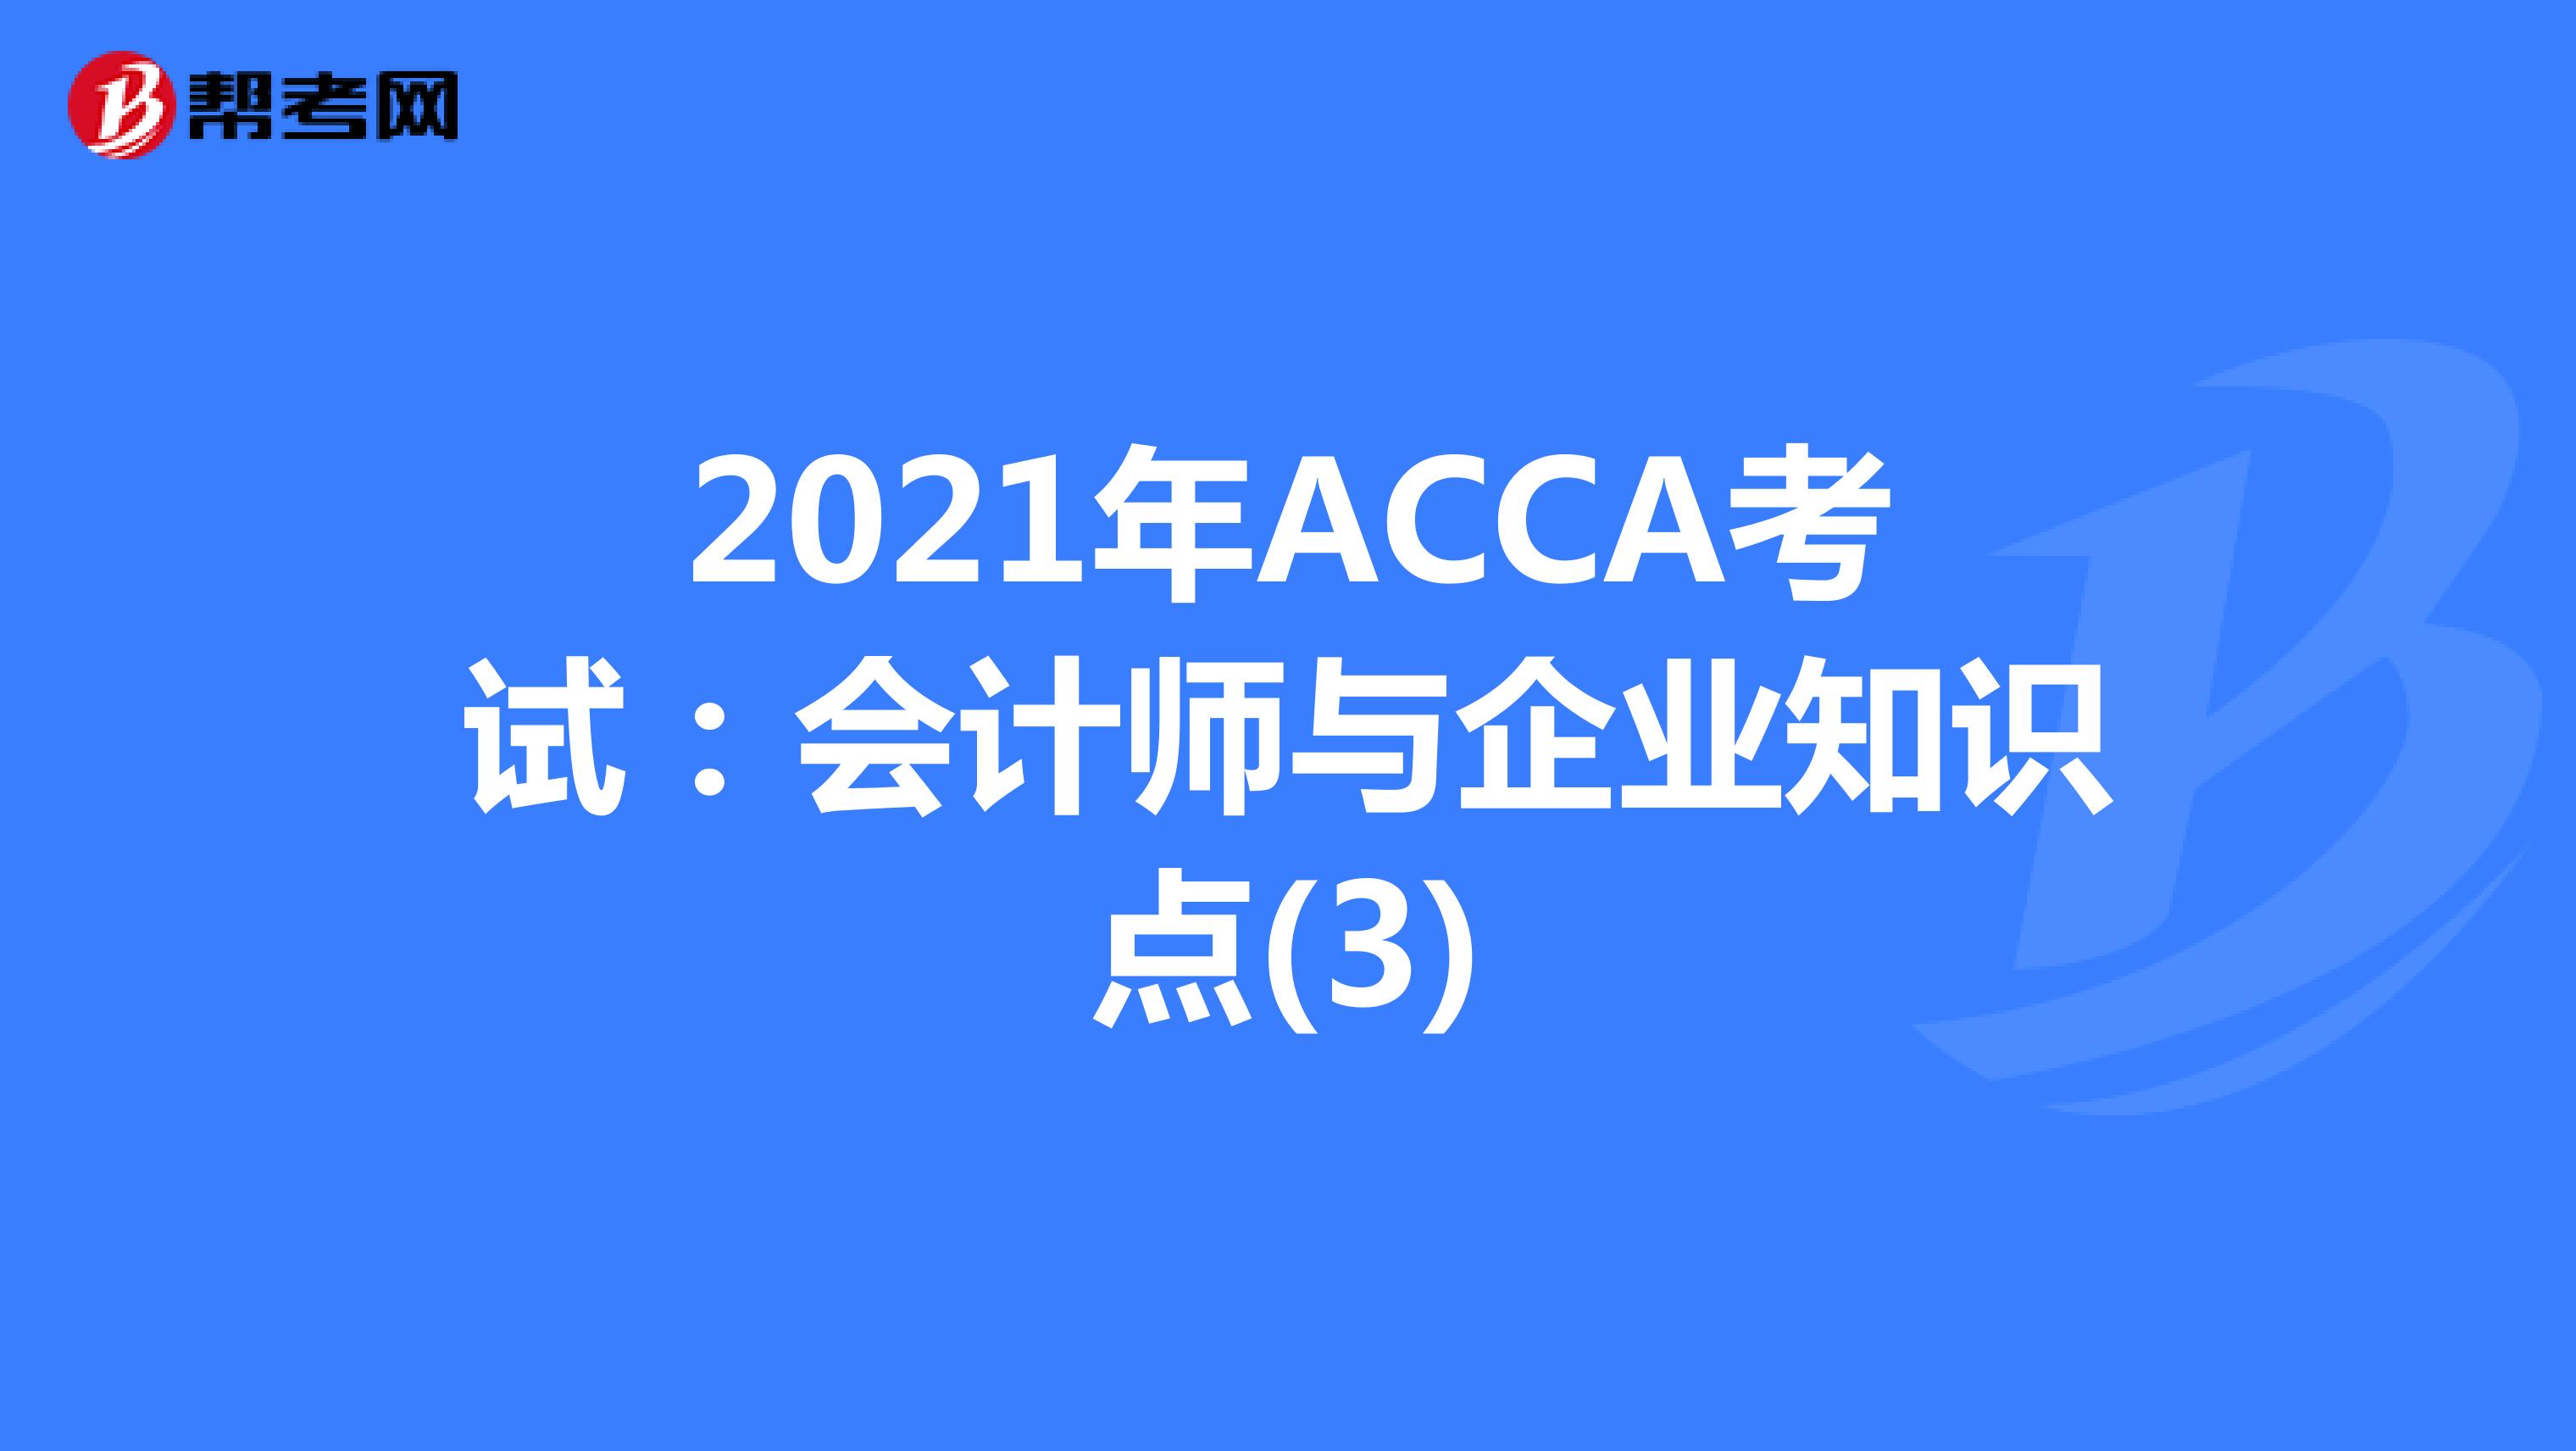 2021年ACCA考试：会计师与企业知识点(3)